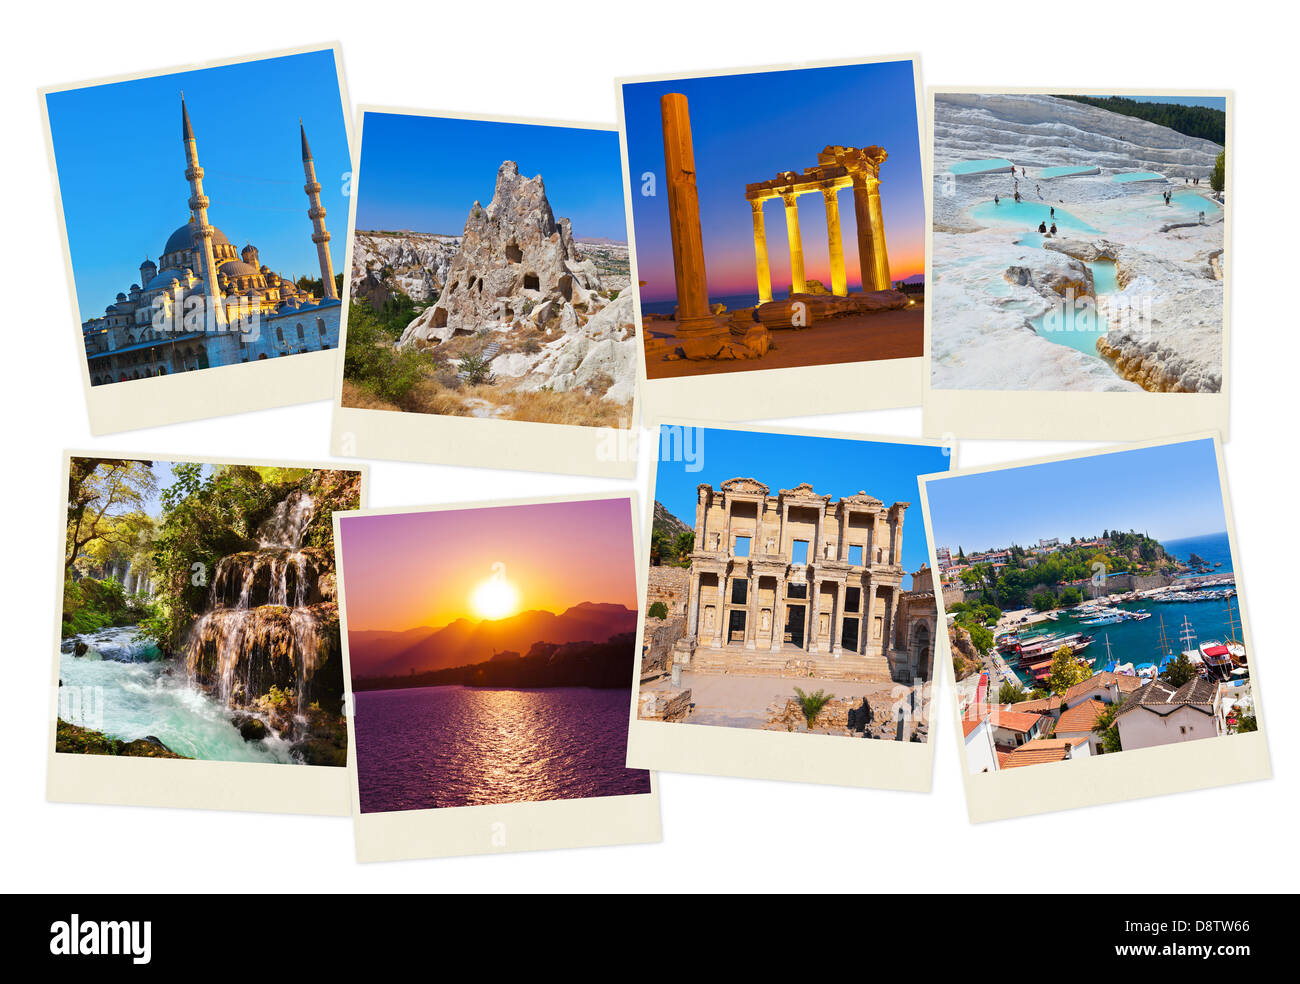 Pila di Turchia le immagini del viaggio Foto Stock